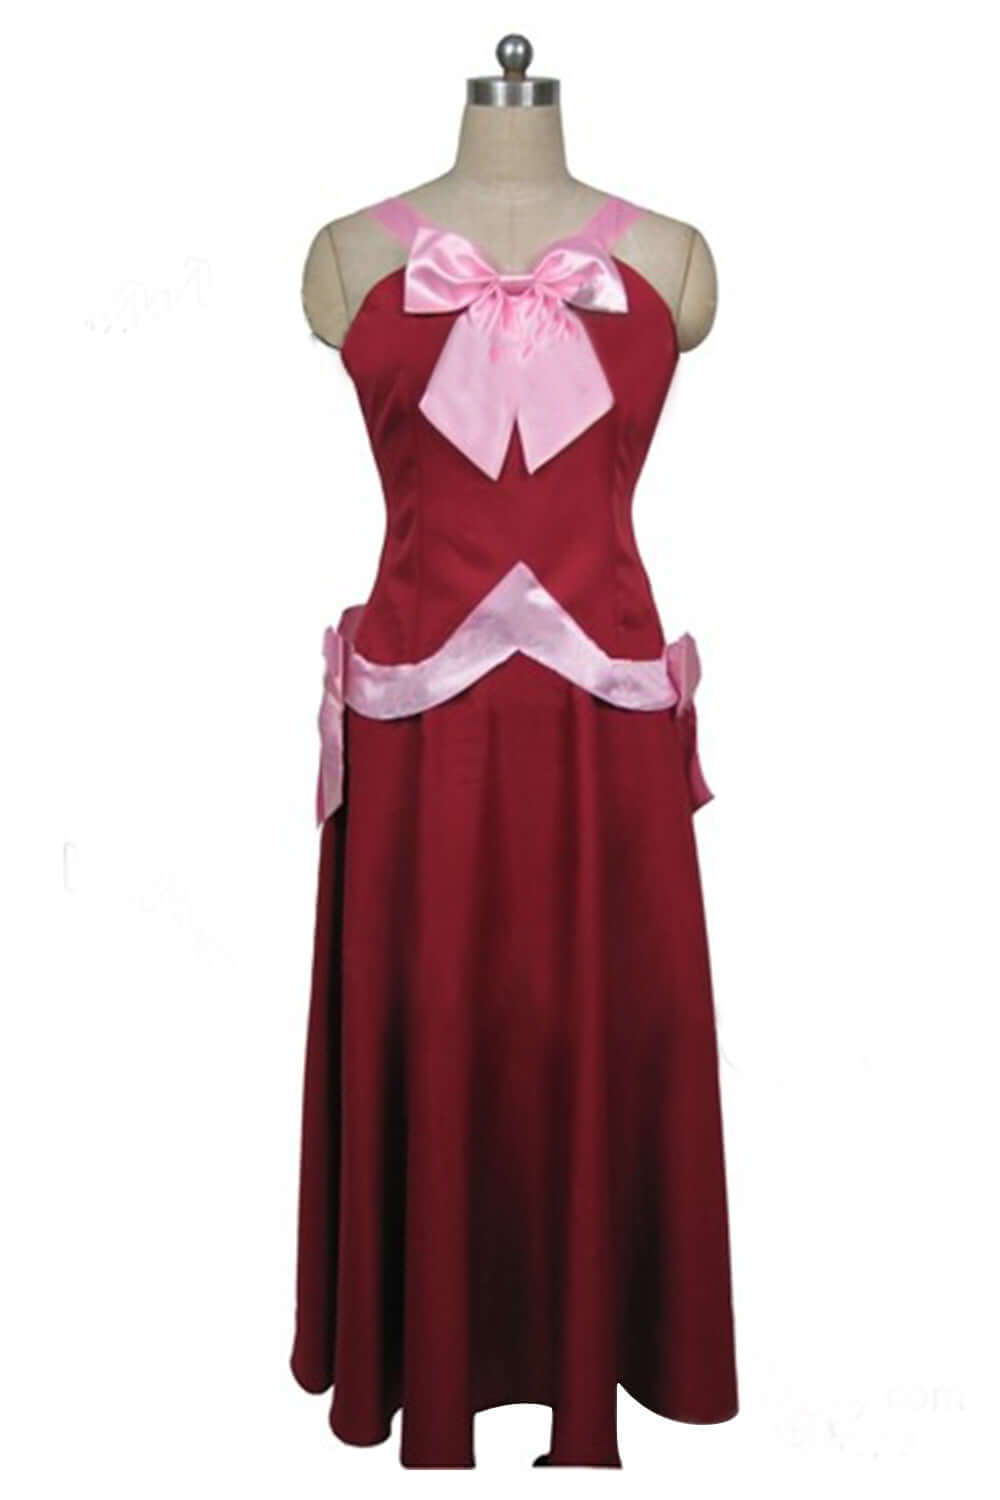 Fairy Tail Mirajane Cosplay Costume